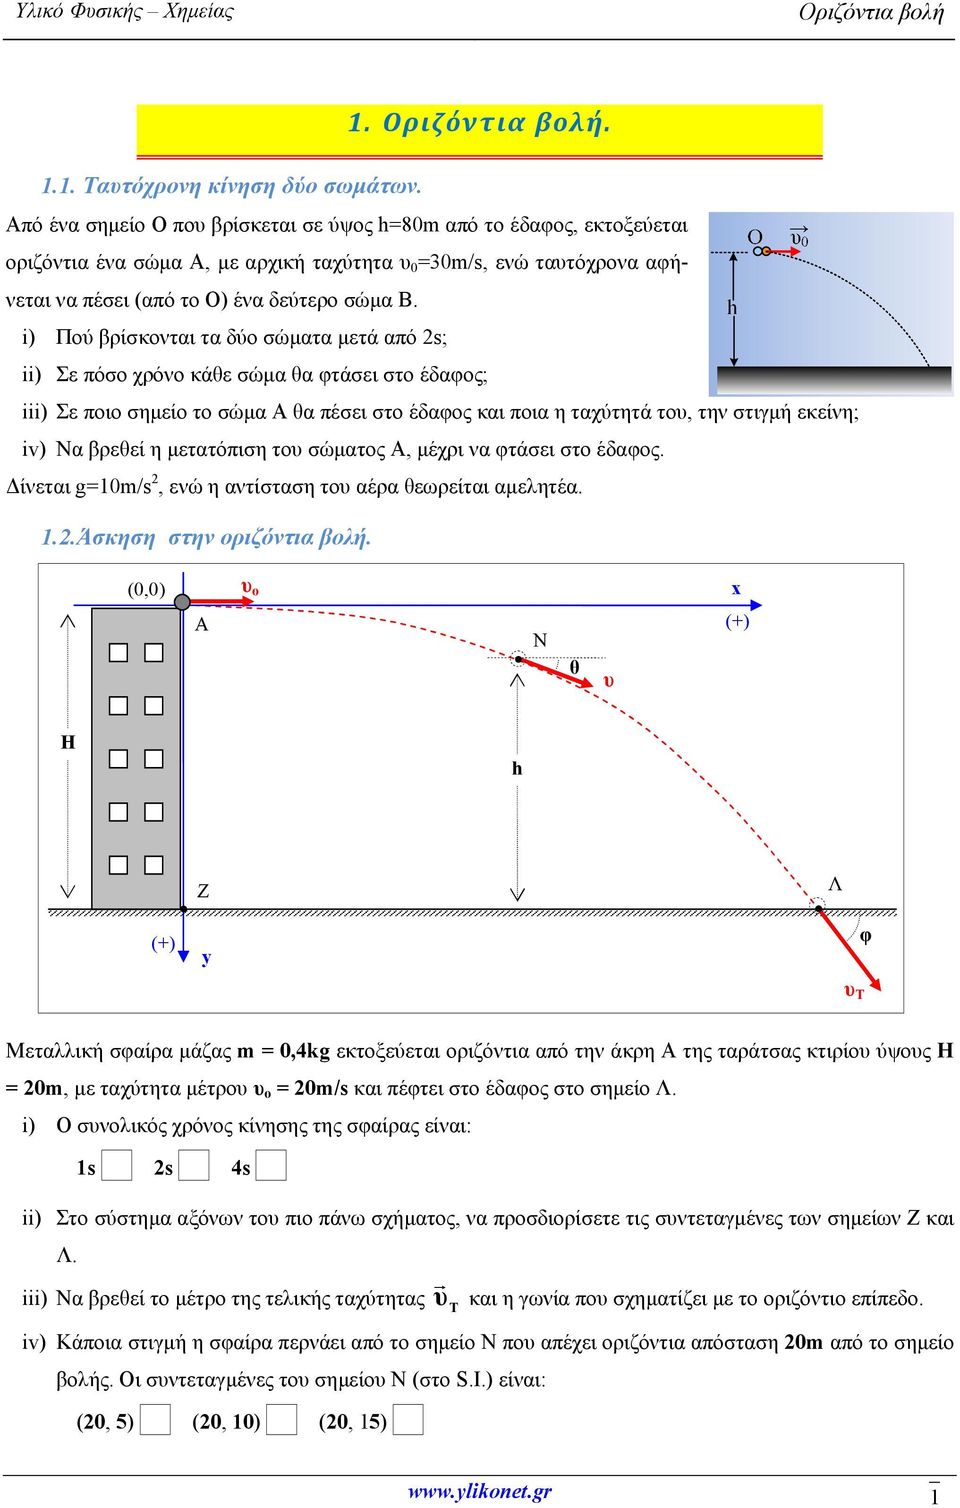 1. Οριζόντια βολή. ii) Στο σύστημα αξόνων του πιο πάνω σχήματος, να  προσδιορίσετε τις συντεταγμένες των σημείων Ζ και Λ. - PDF Free Download